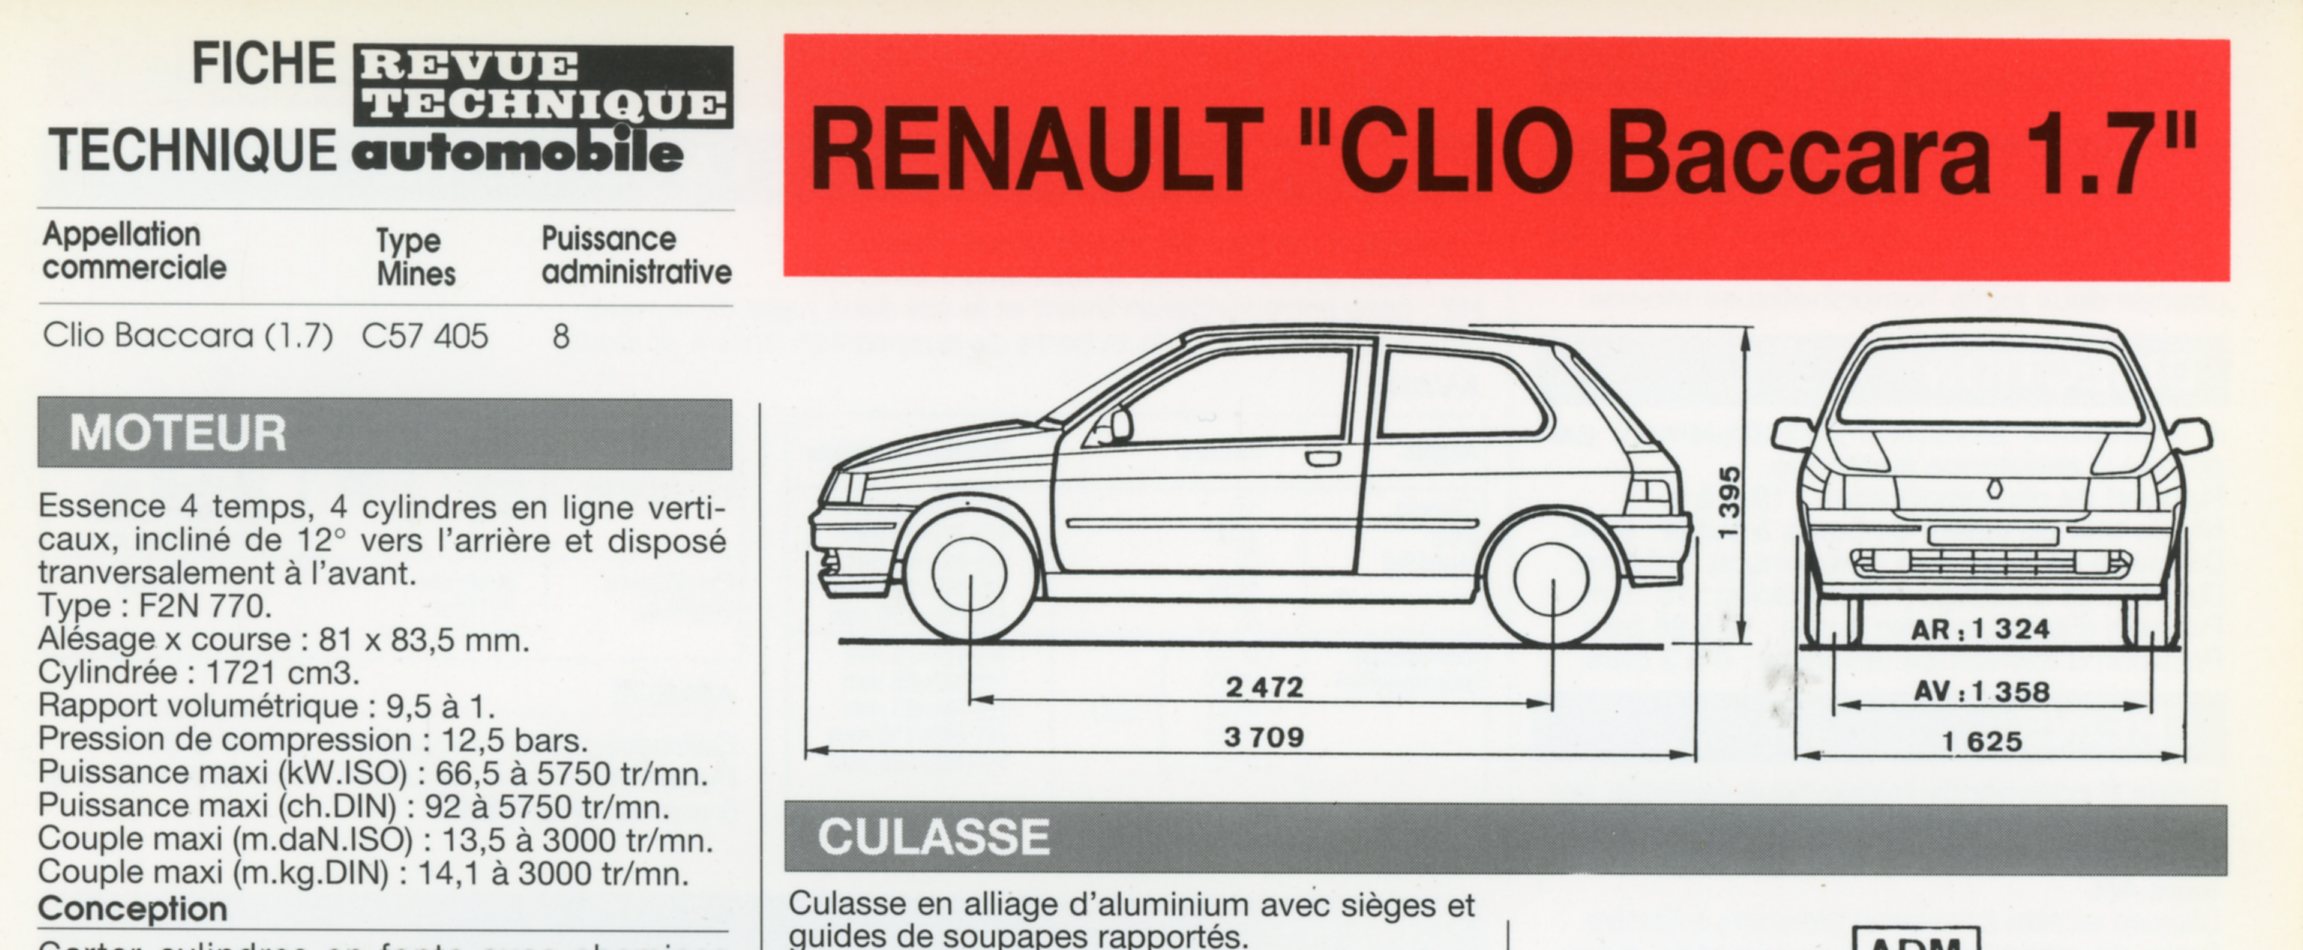 FICHE TECHNIQUE RENAULT CLIO BACCARA 1.7 - FICHE RTA AUTOMOBILE 1992